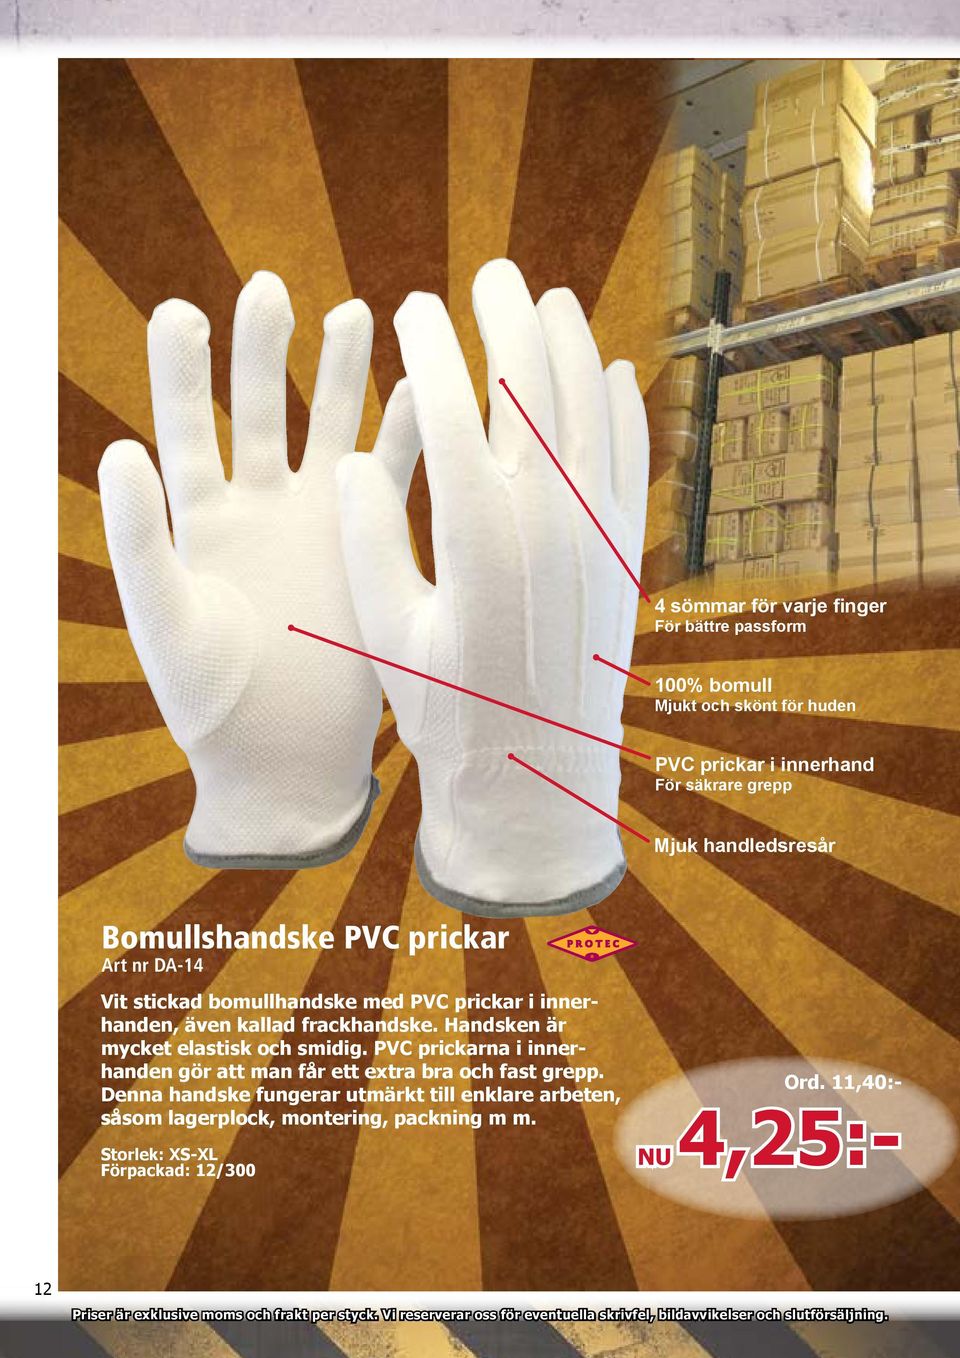 PVC prickarna i innerhanden gör att man får ett extra bra och fast grepp.